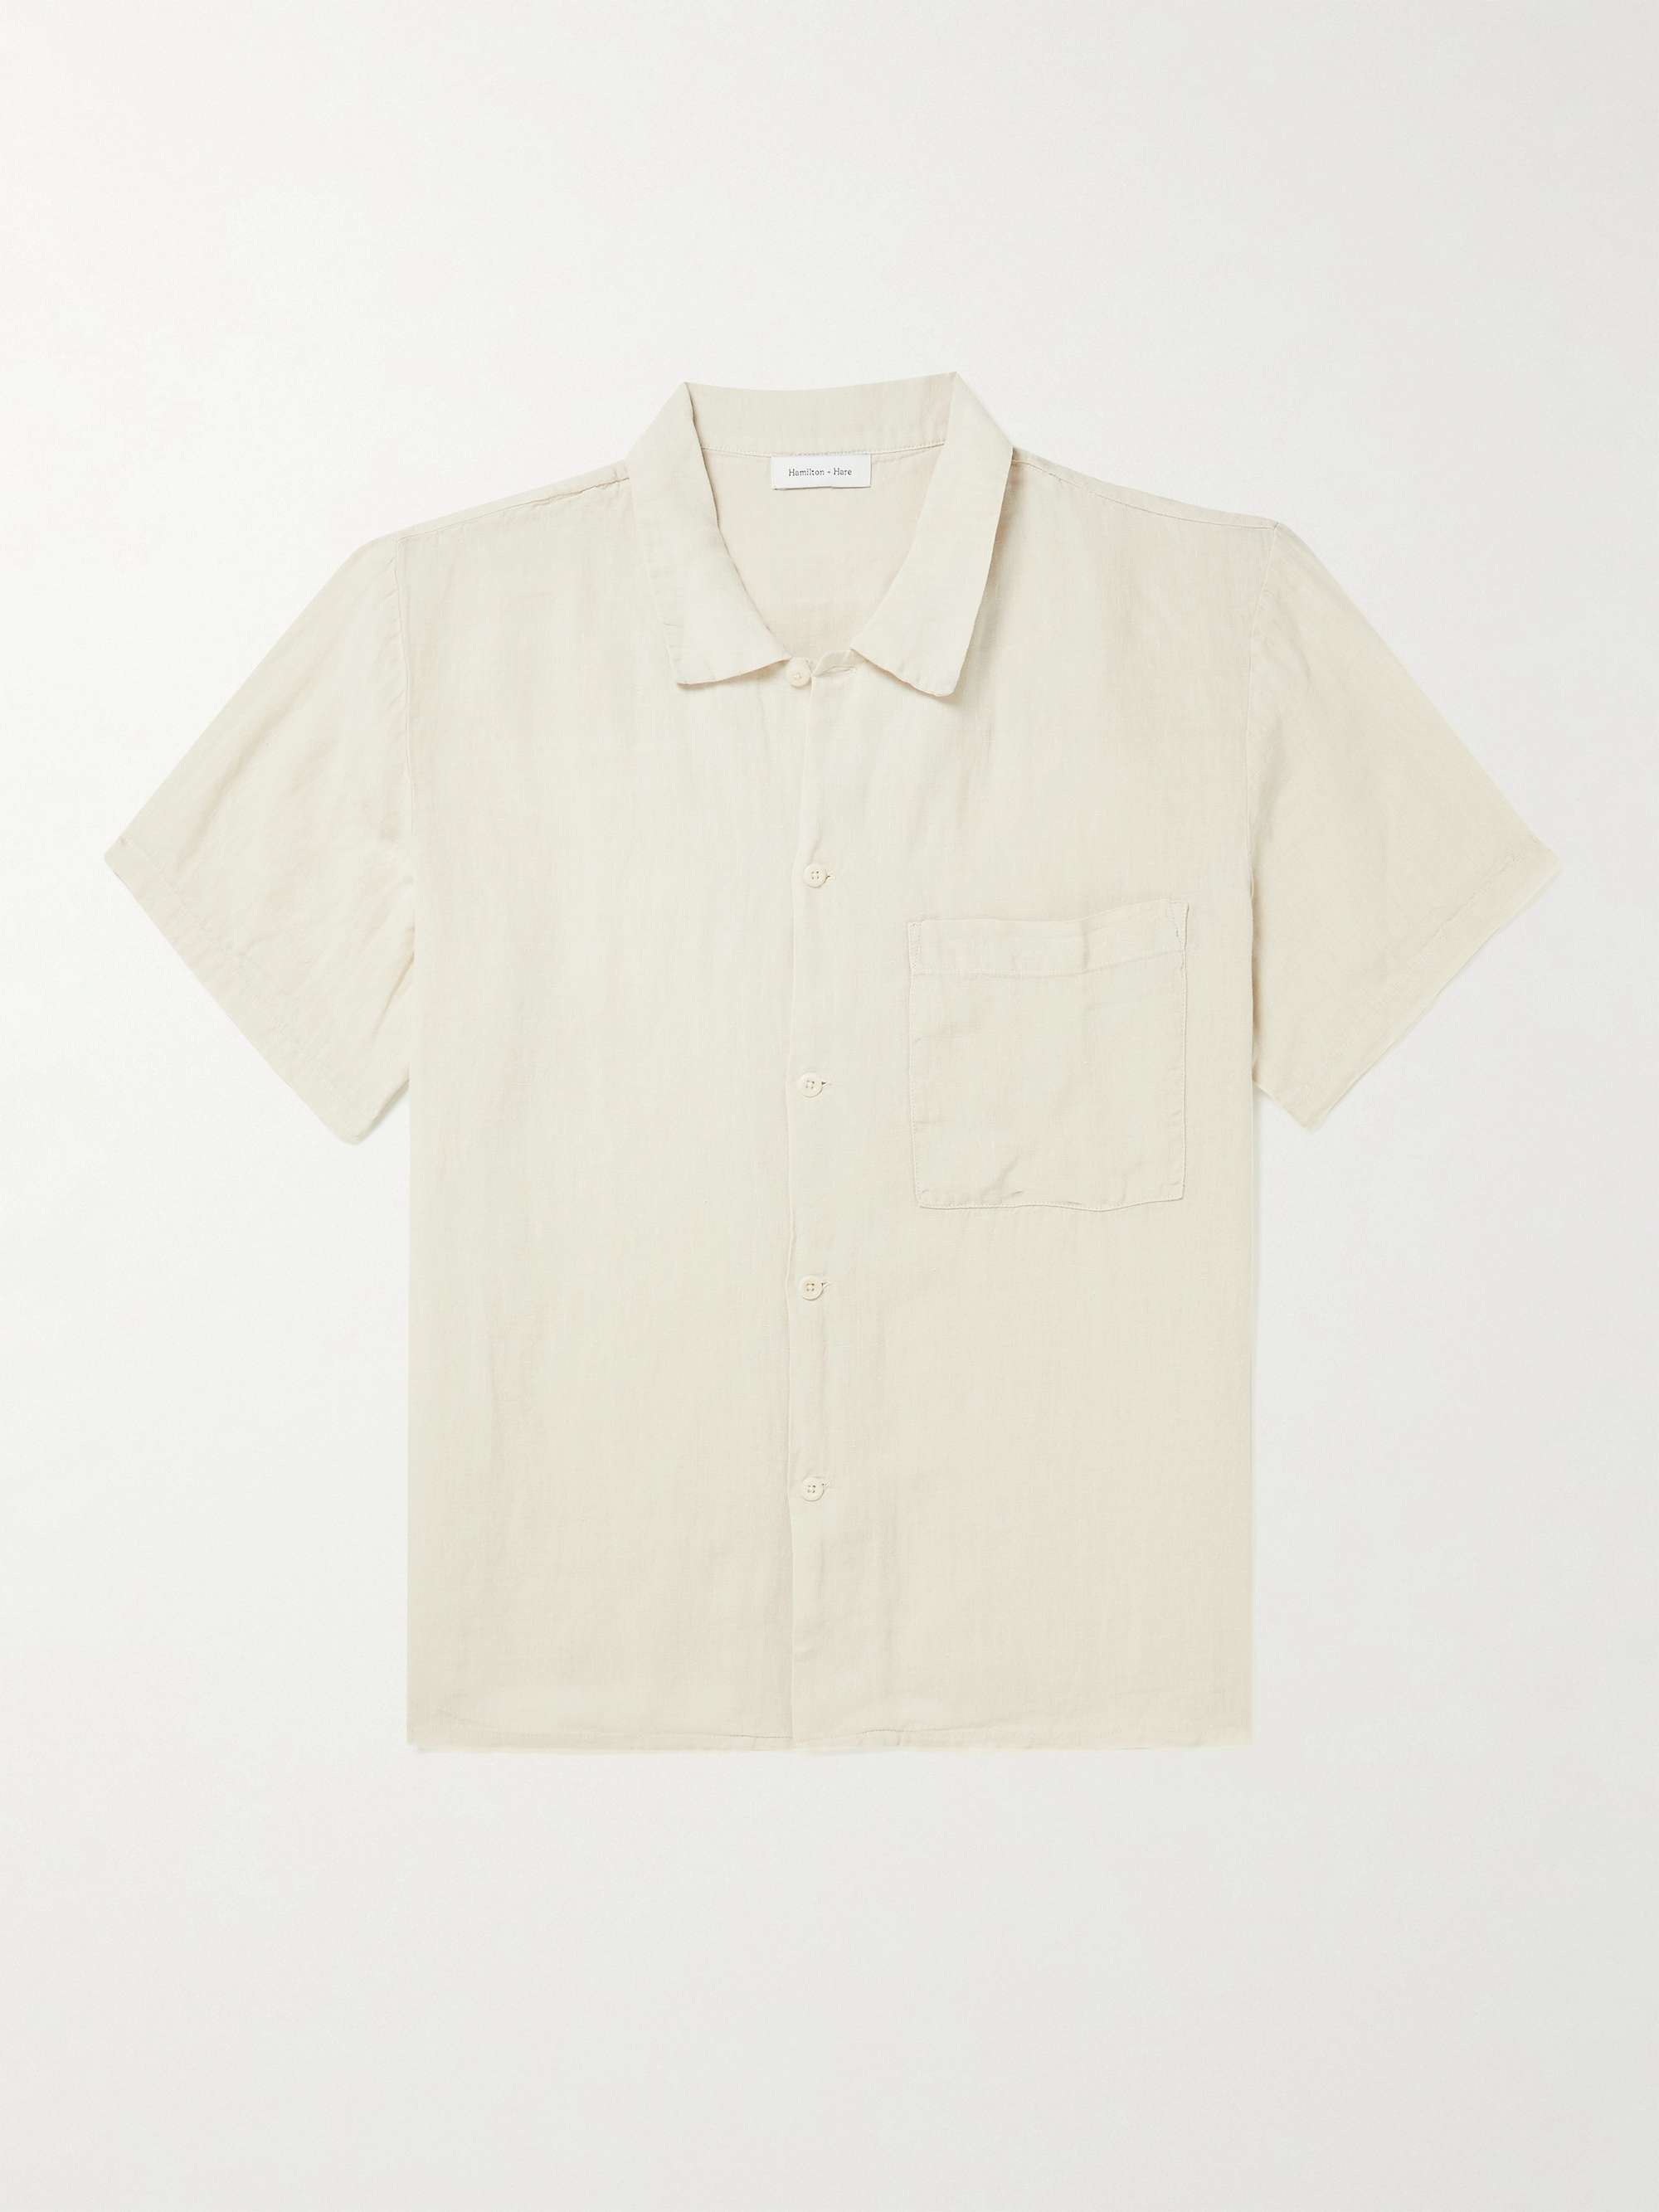 HAMILTON AND HARE Linen Shirt